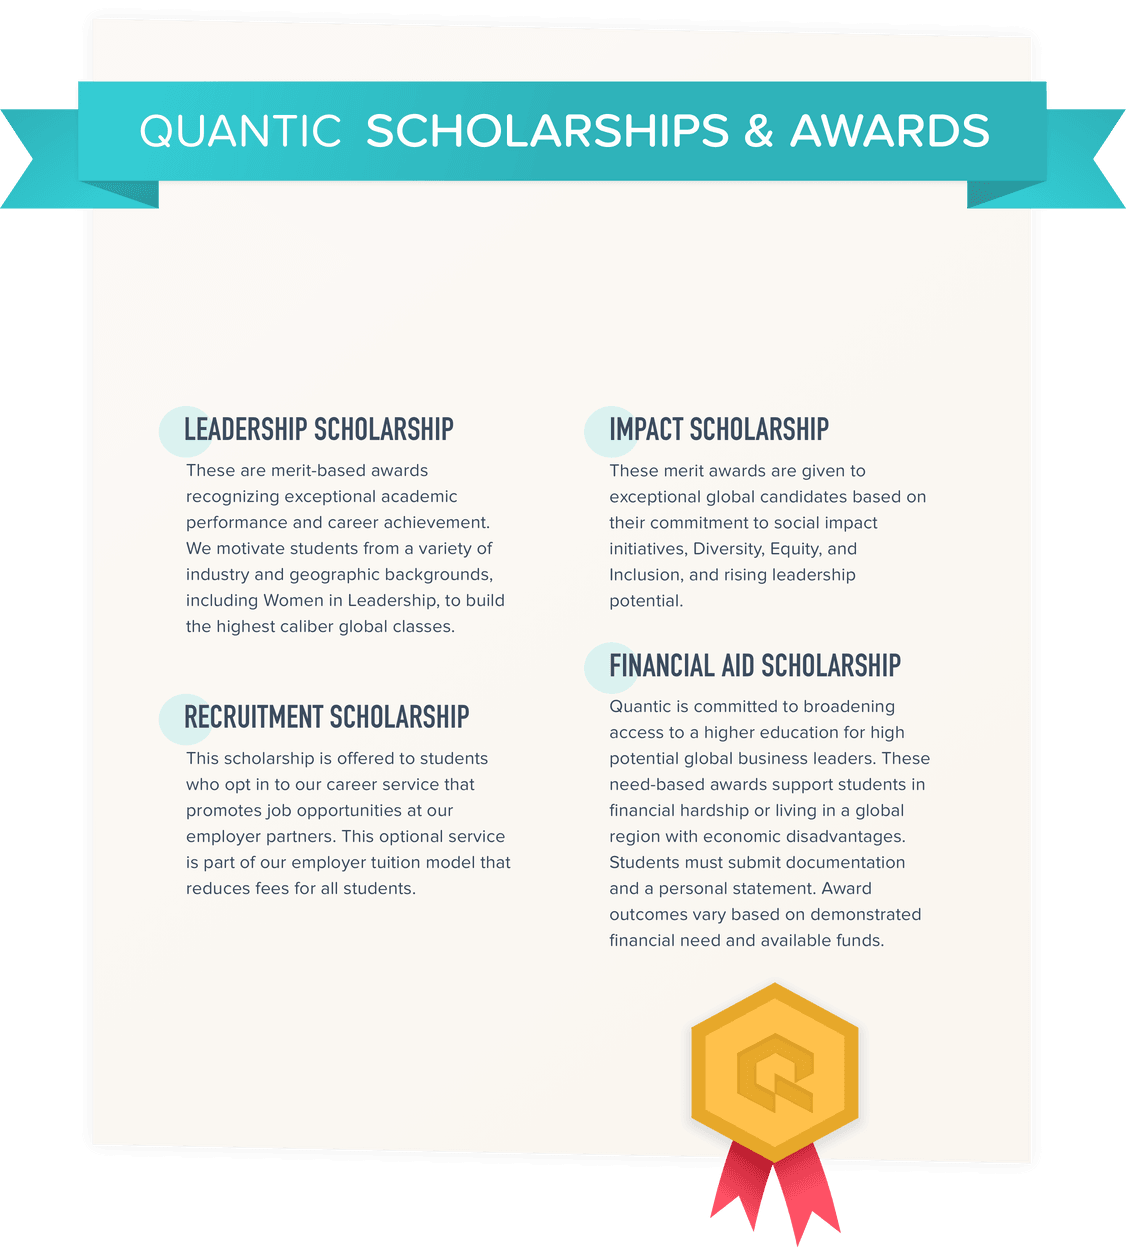 Quantic Scholarships & Awards